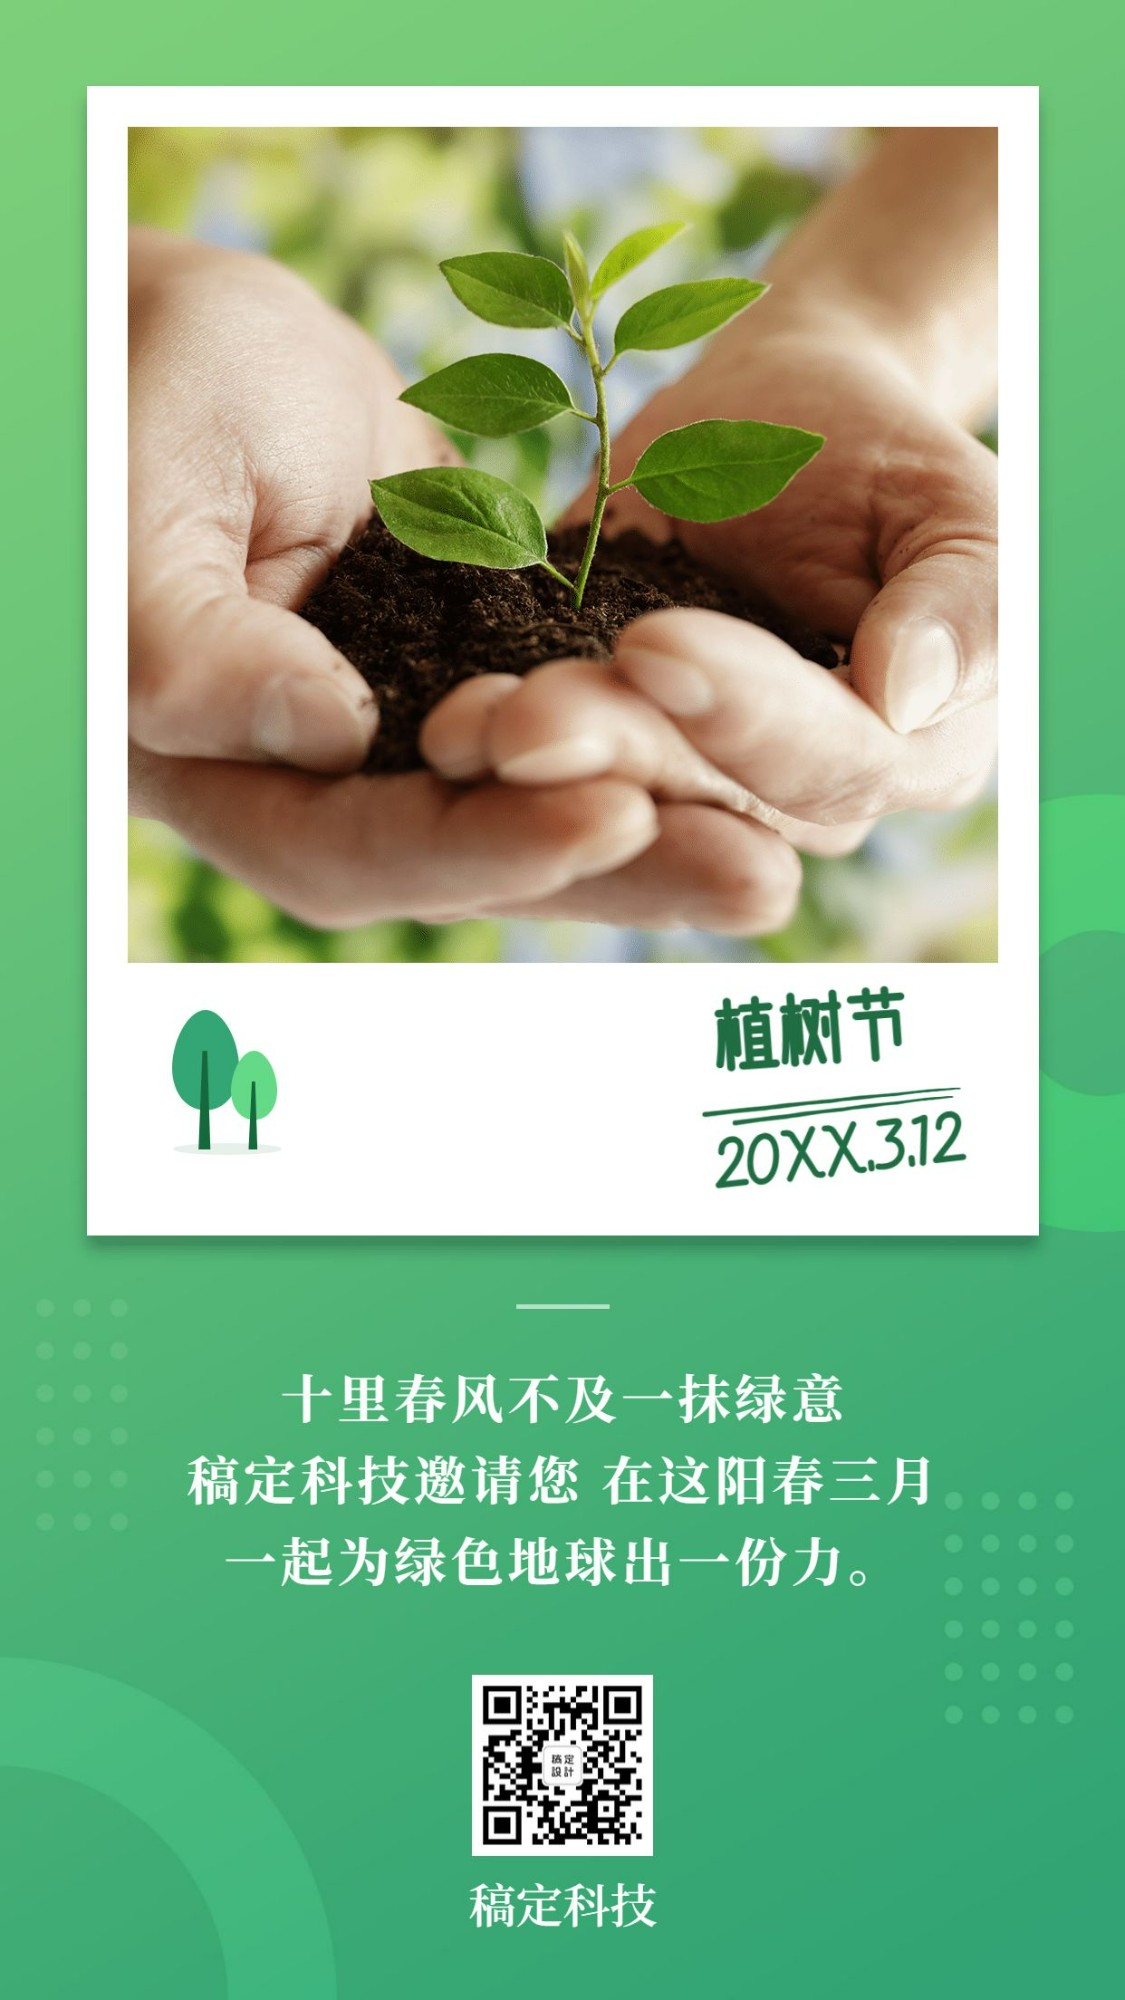 植树节活动晒照环保手机海报预览效果